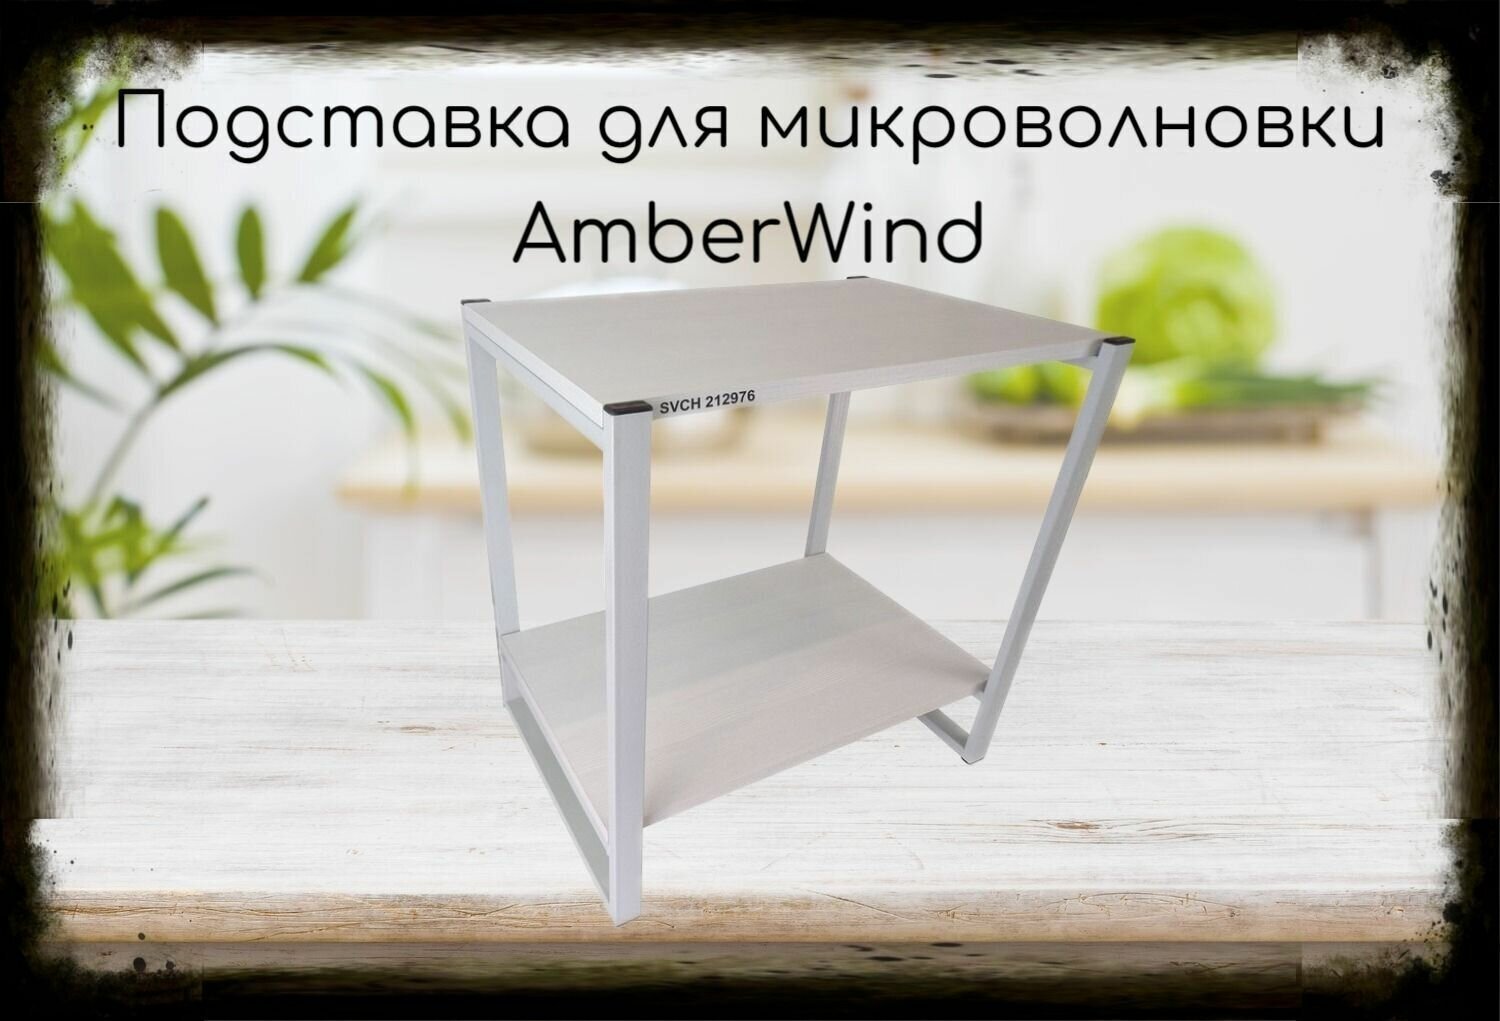 Подставка для микроволновки, серый, 55см "AmberWind 212976" с двумя уровнями, сосна выбеленная